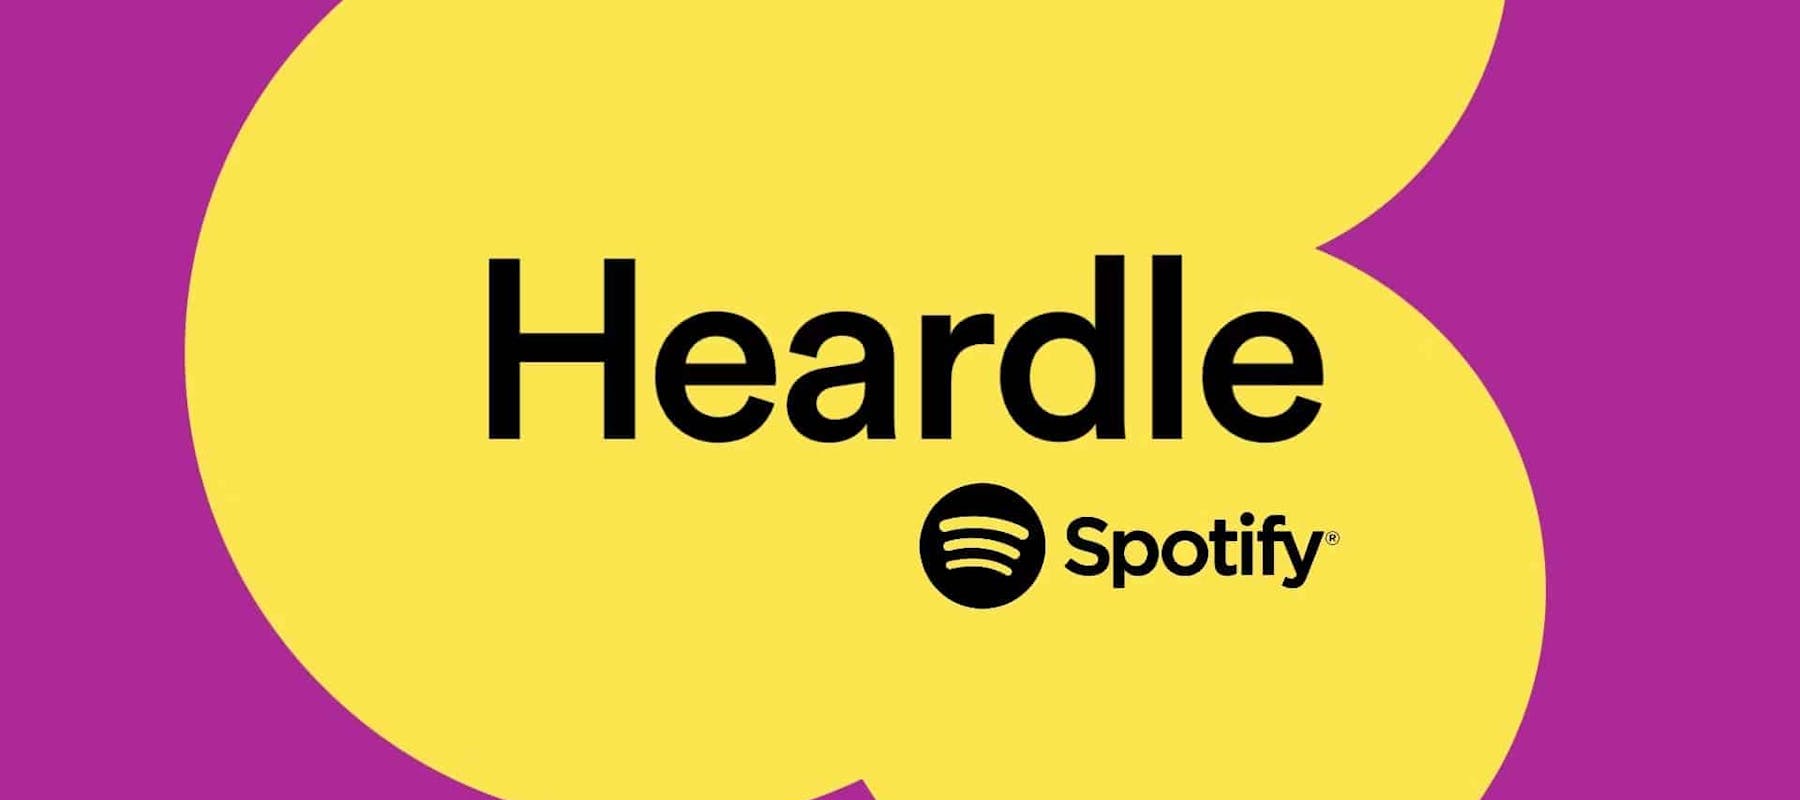 Heardle, een muziekspel van Spotify